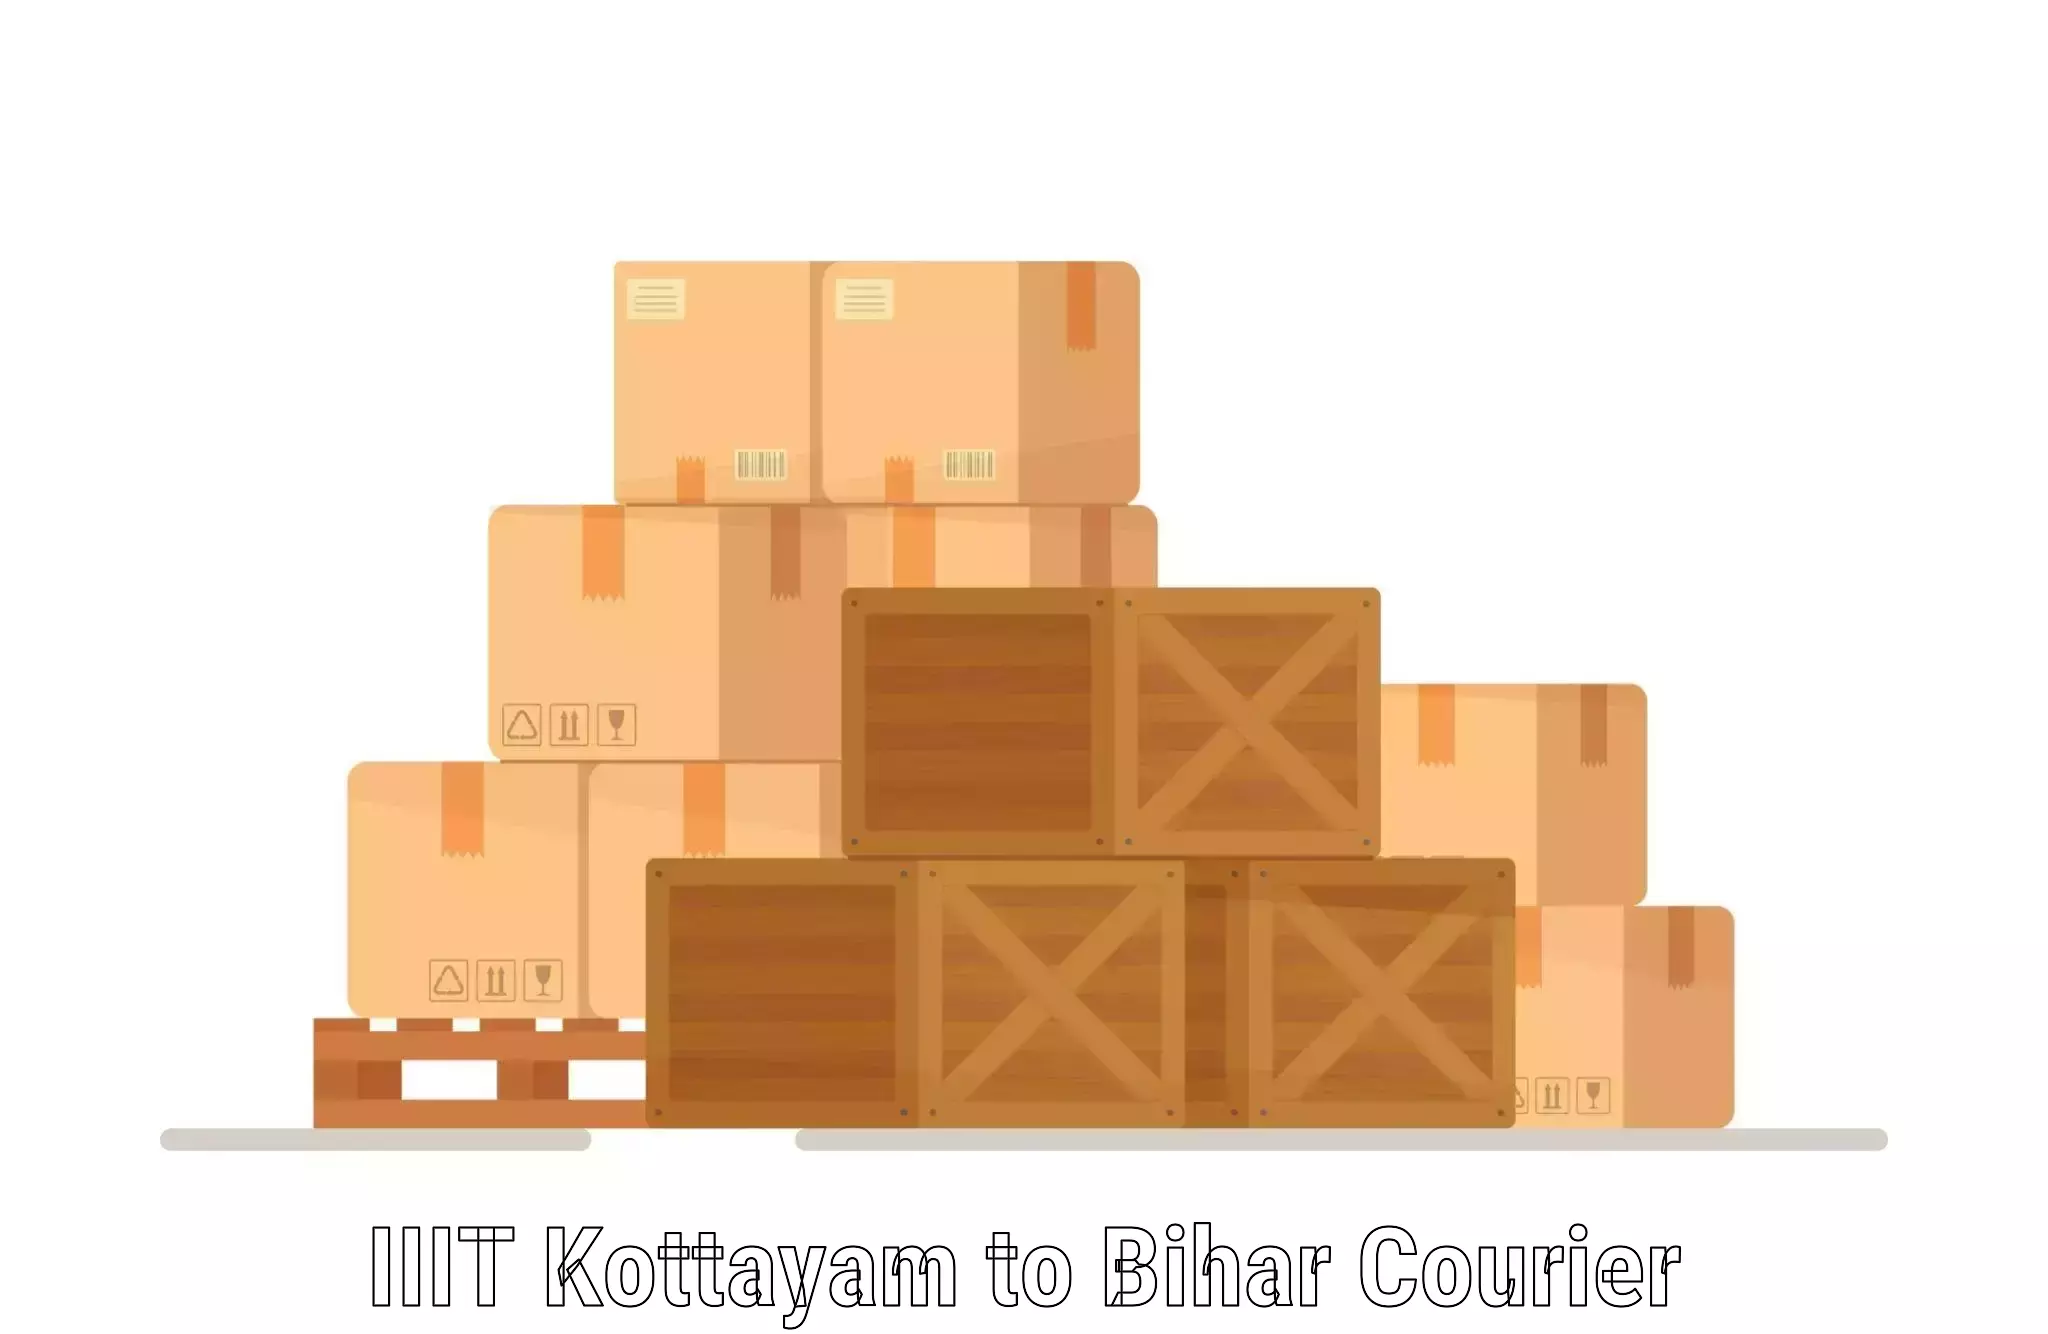 Multi-package shipping IIIT Kottayam to Ekma